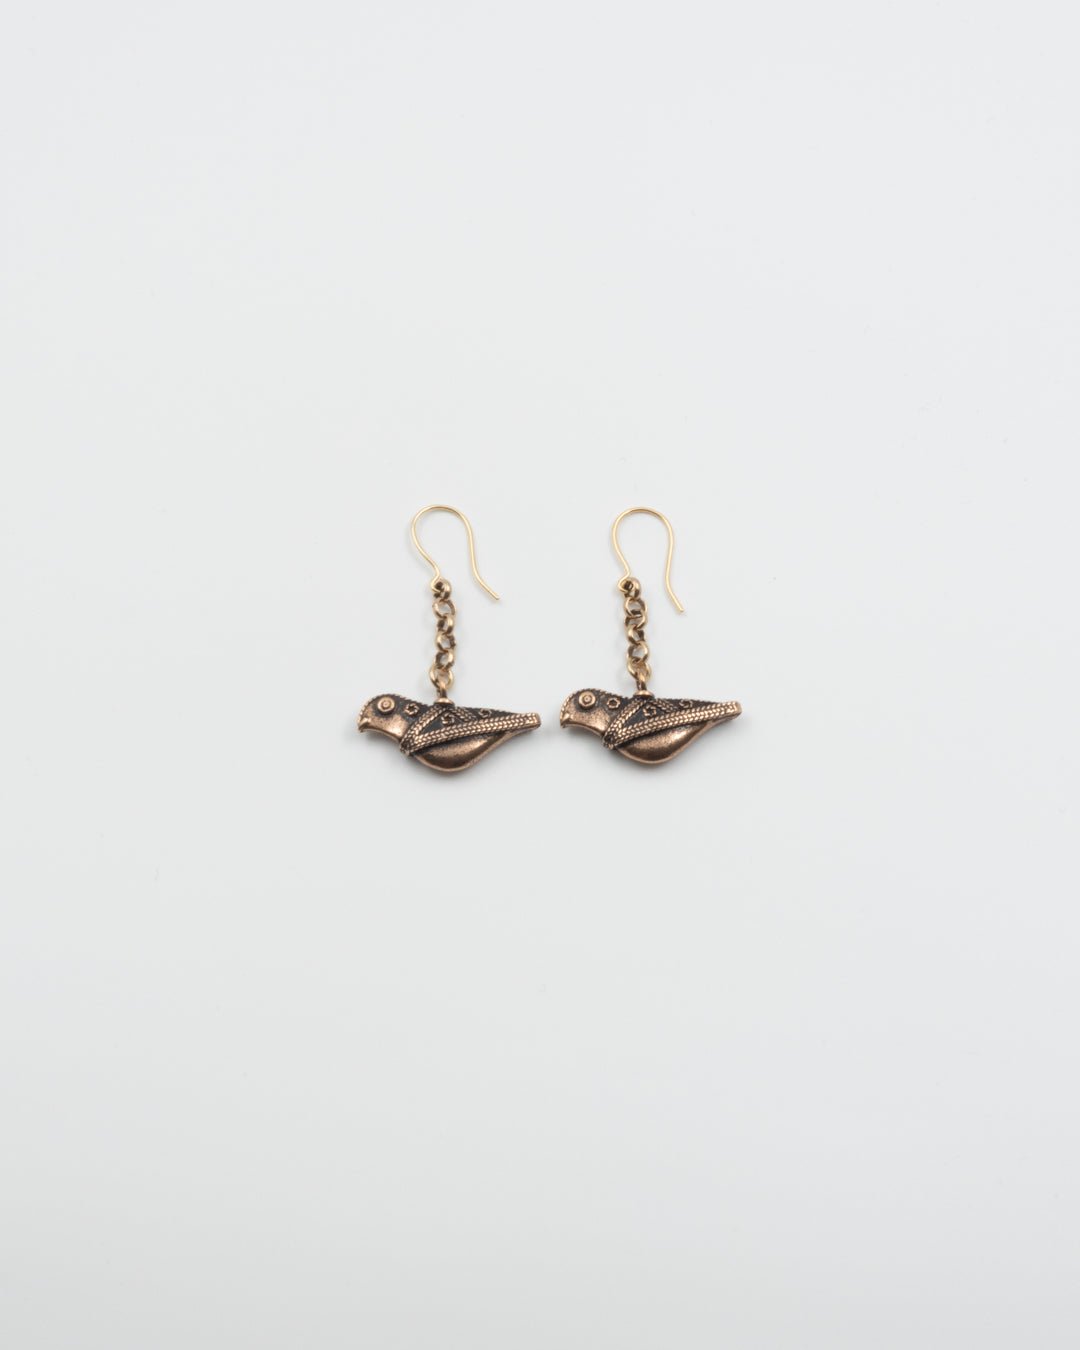 Kept Hattula's bird earrings bronze